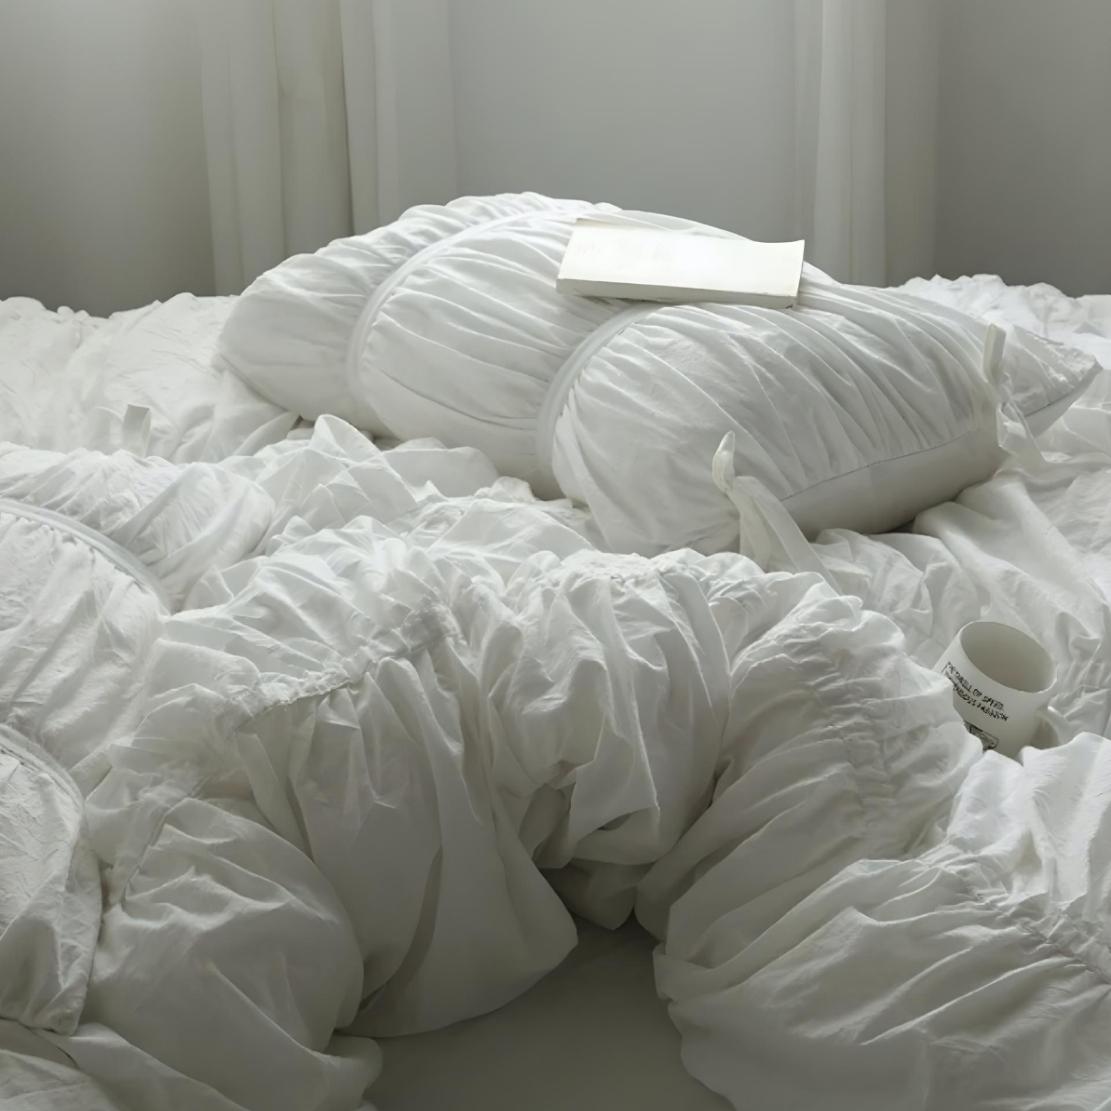 White elegant dreamy bedding set